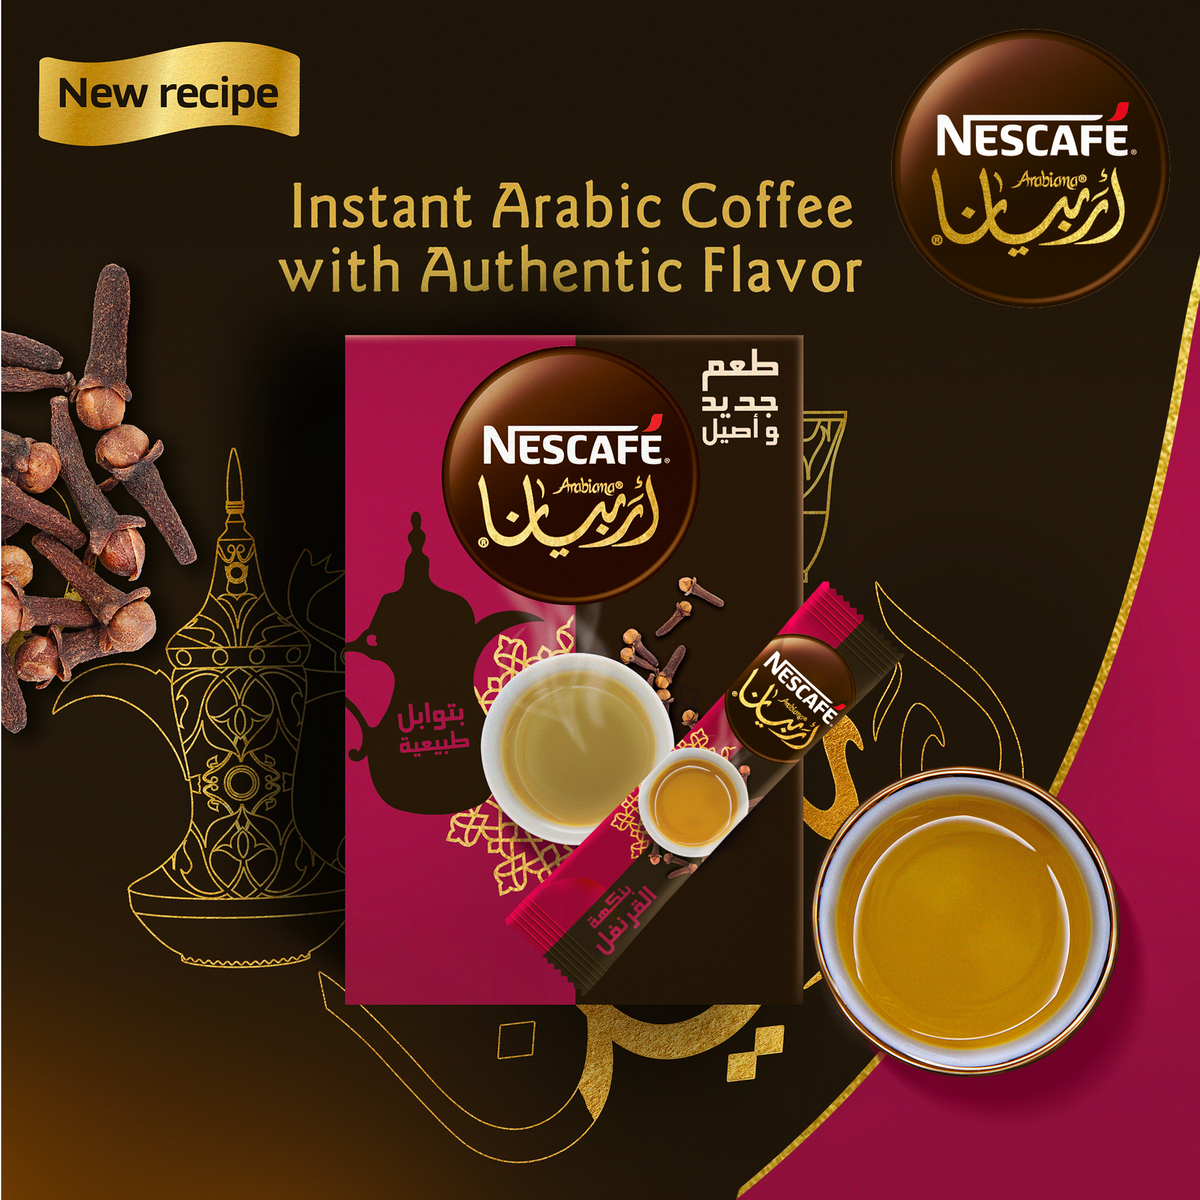 نسكافية قهوة عربية سريعة التحضير بالقرنفل 3 جم × 20 حبه